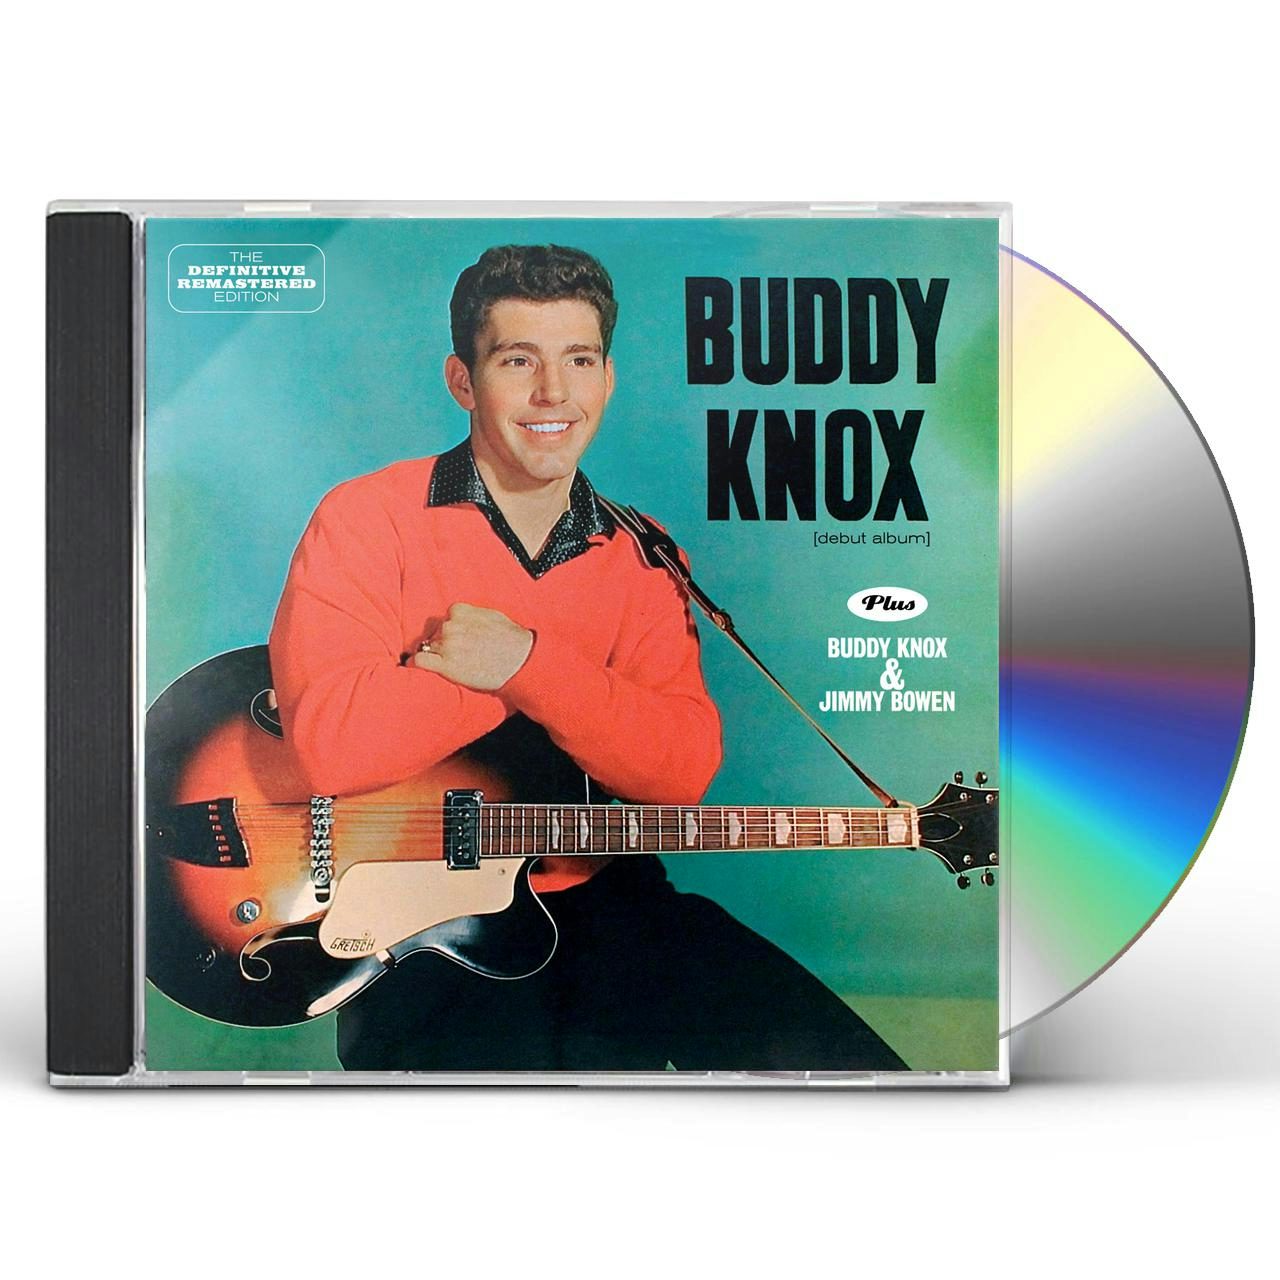 Buddy Knox + BUDDY KNOX u0026 JIMMY BOWEN CD